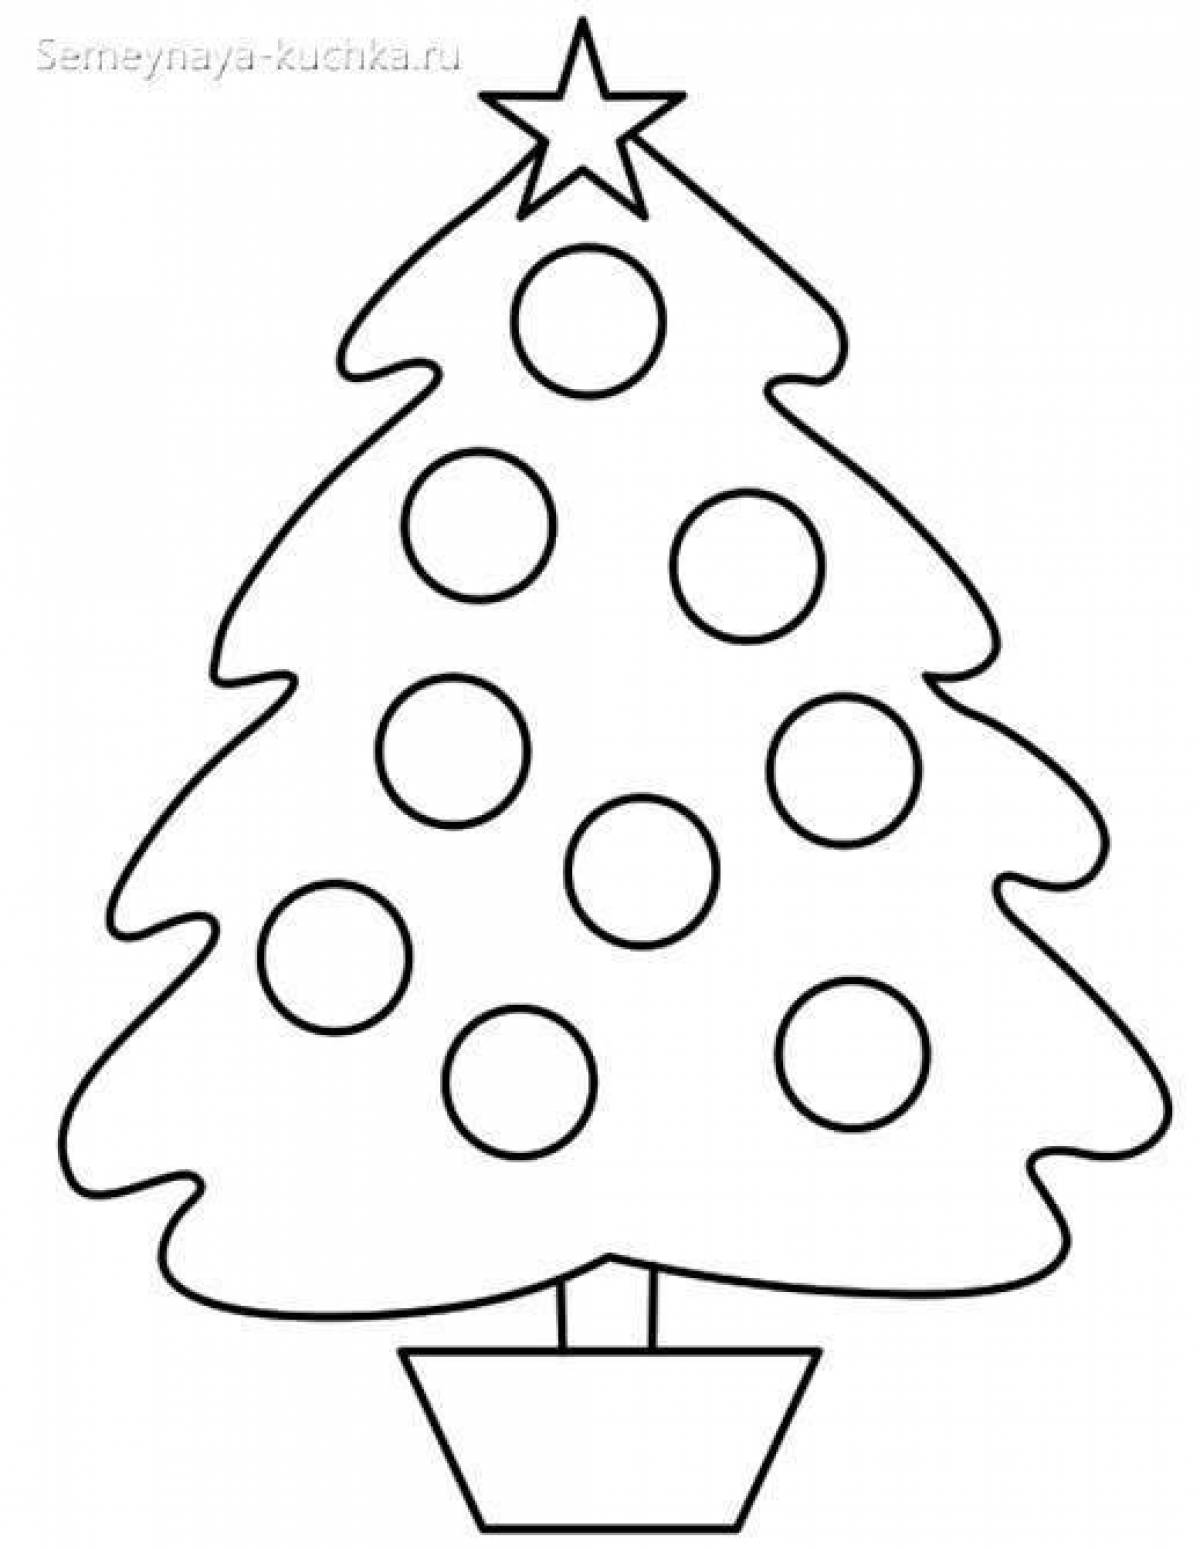 Fun Christmas tree with balls